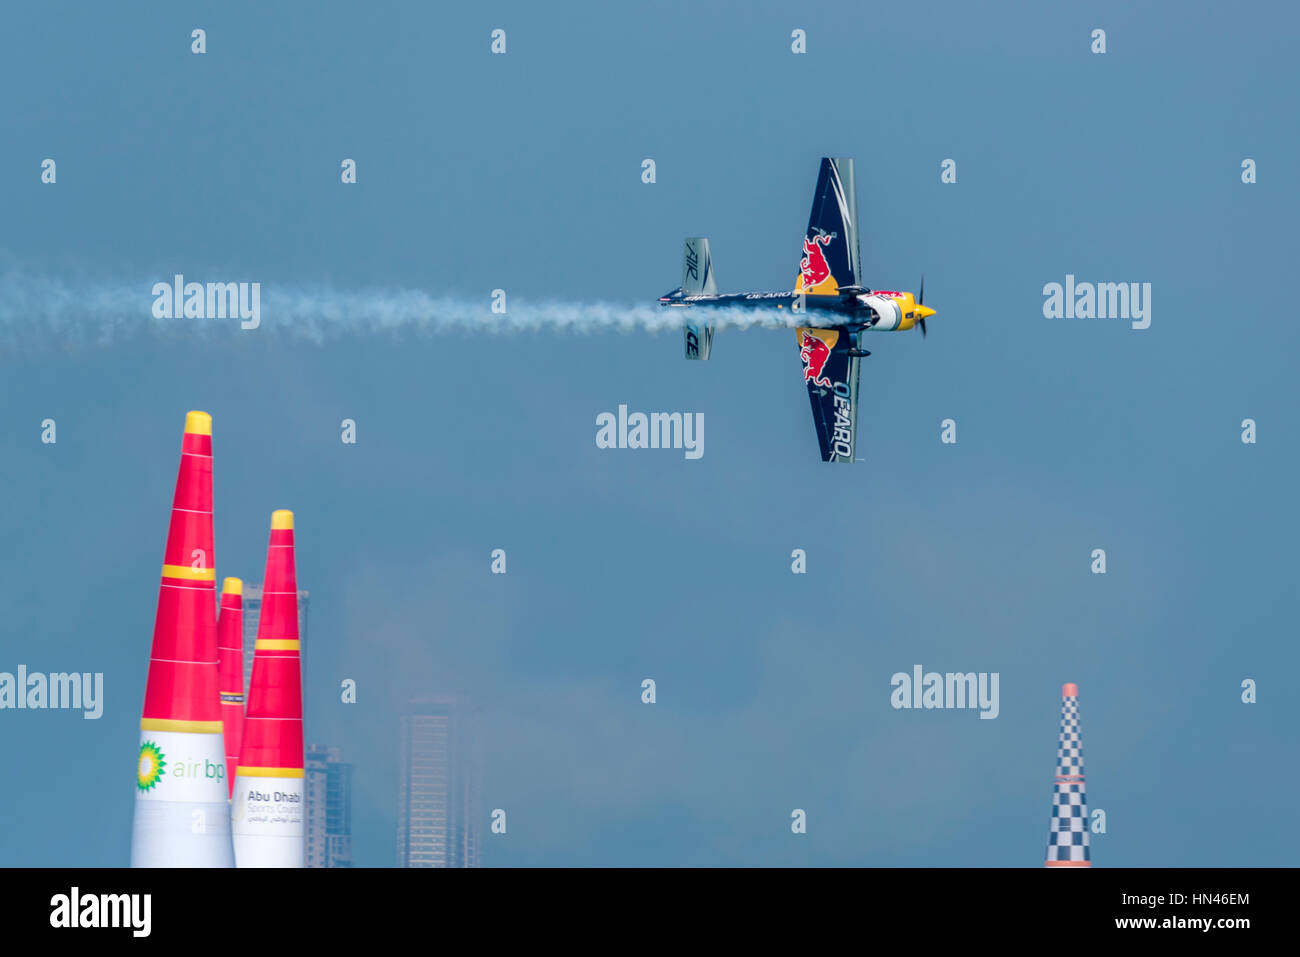 Abu Dhabi, Emirats Arabes Unis. 8 Feb 2017. Vol d'entraînement pour l'Abu Dhabi étape du Red Bull Air Race 2017. Jours de course sont 10 et 11 février 2017. Crédit : Richard Sharrocks / Alamy Live News. Banque D'Images